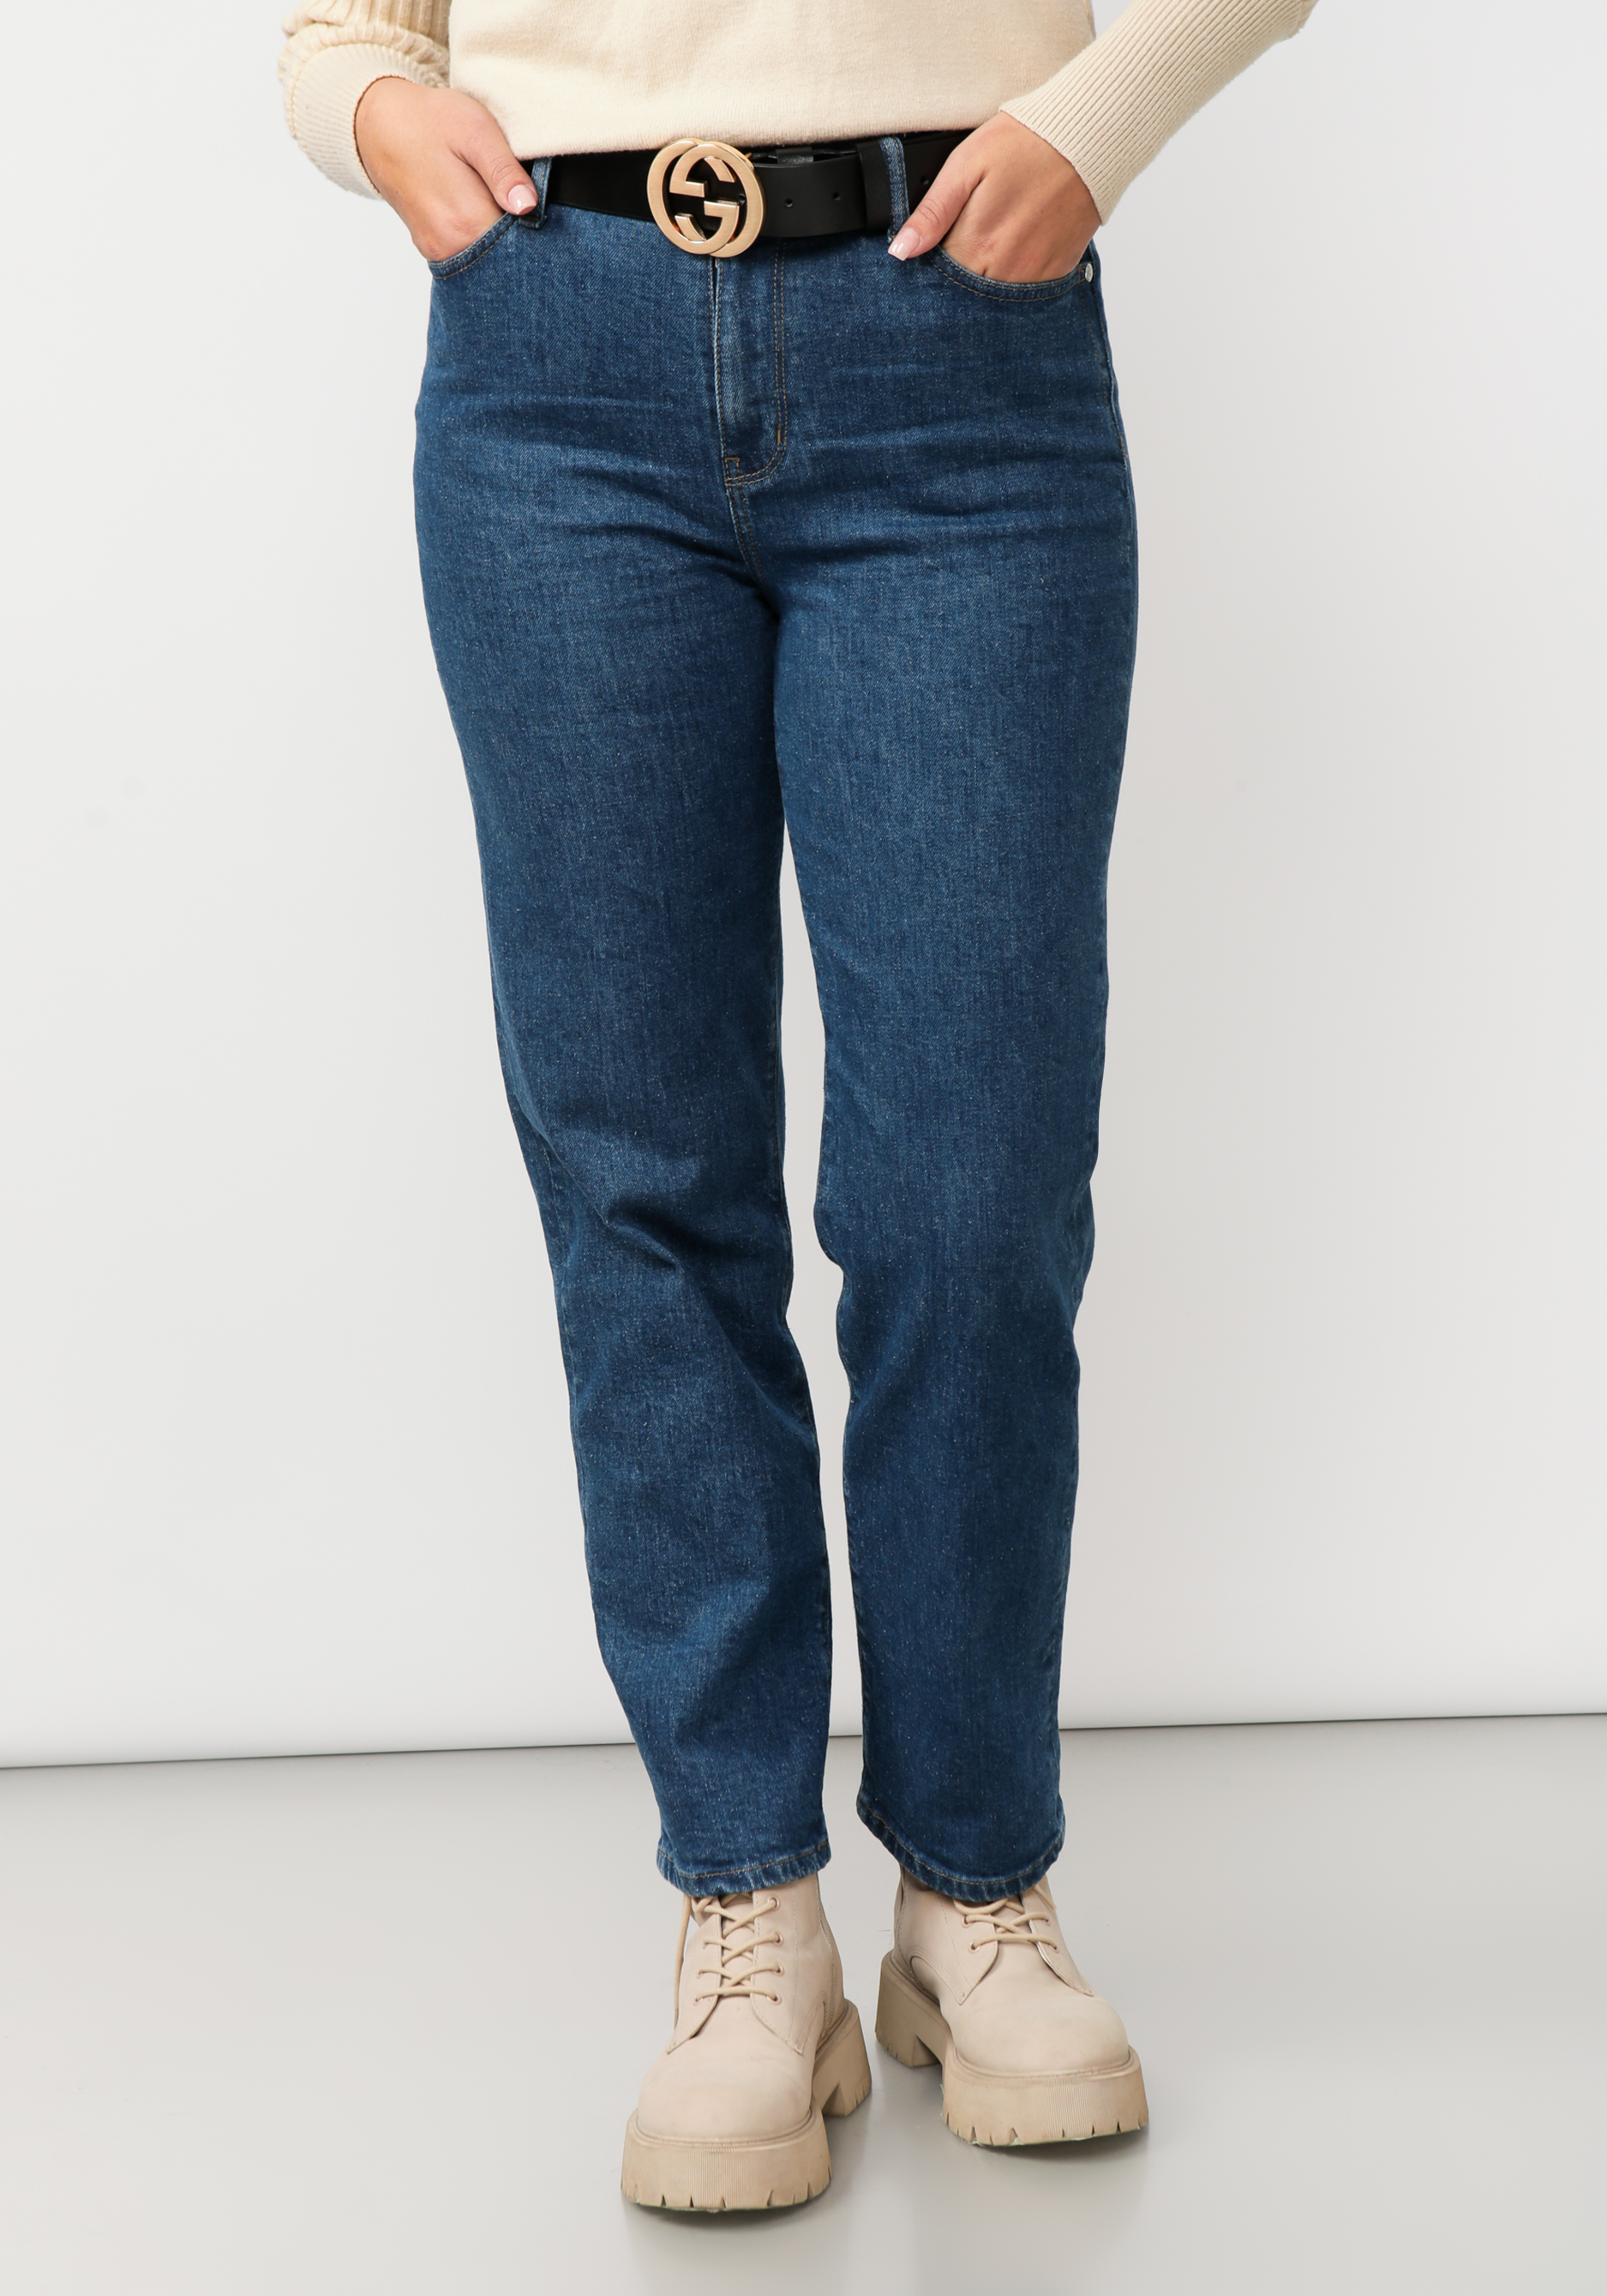 Джинсы прямого кроя с вышивкой на кармане жен джинсы арт 12 0155 голубой р 25